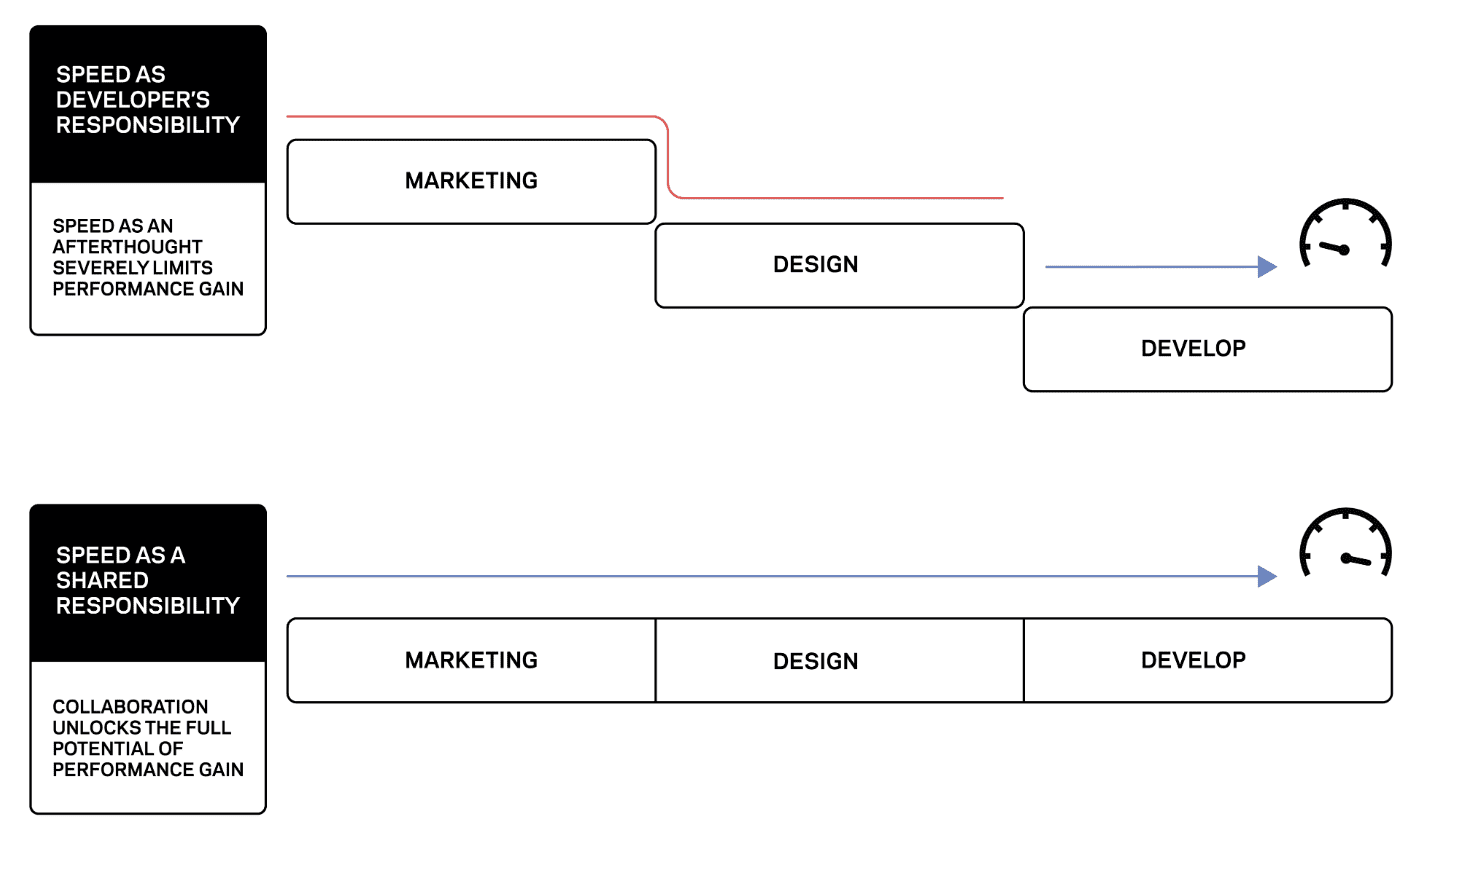 Diagrama que contrasta la velocidad como responsabilidad del desarrollador con la velocidad como responsabilidad compartida En el primer caso, cada fase está aislada, mientras que en el segundo, cada fase ocurre dentro del mismo sistema aislado.